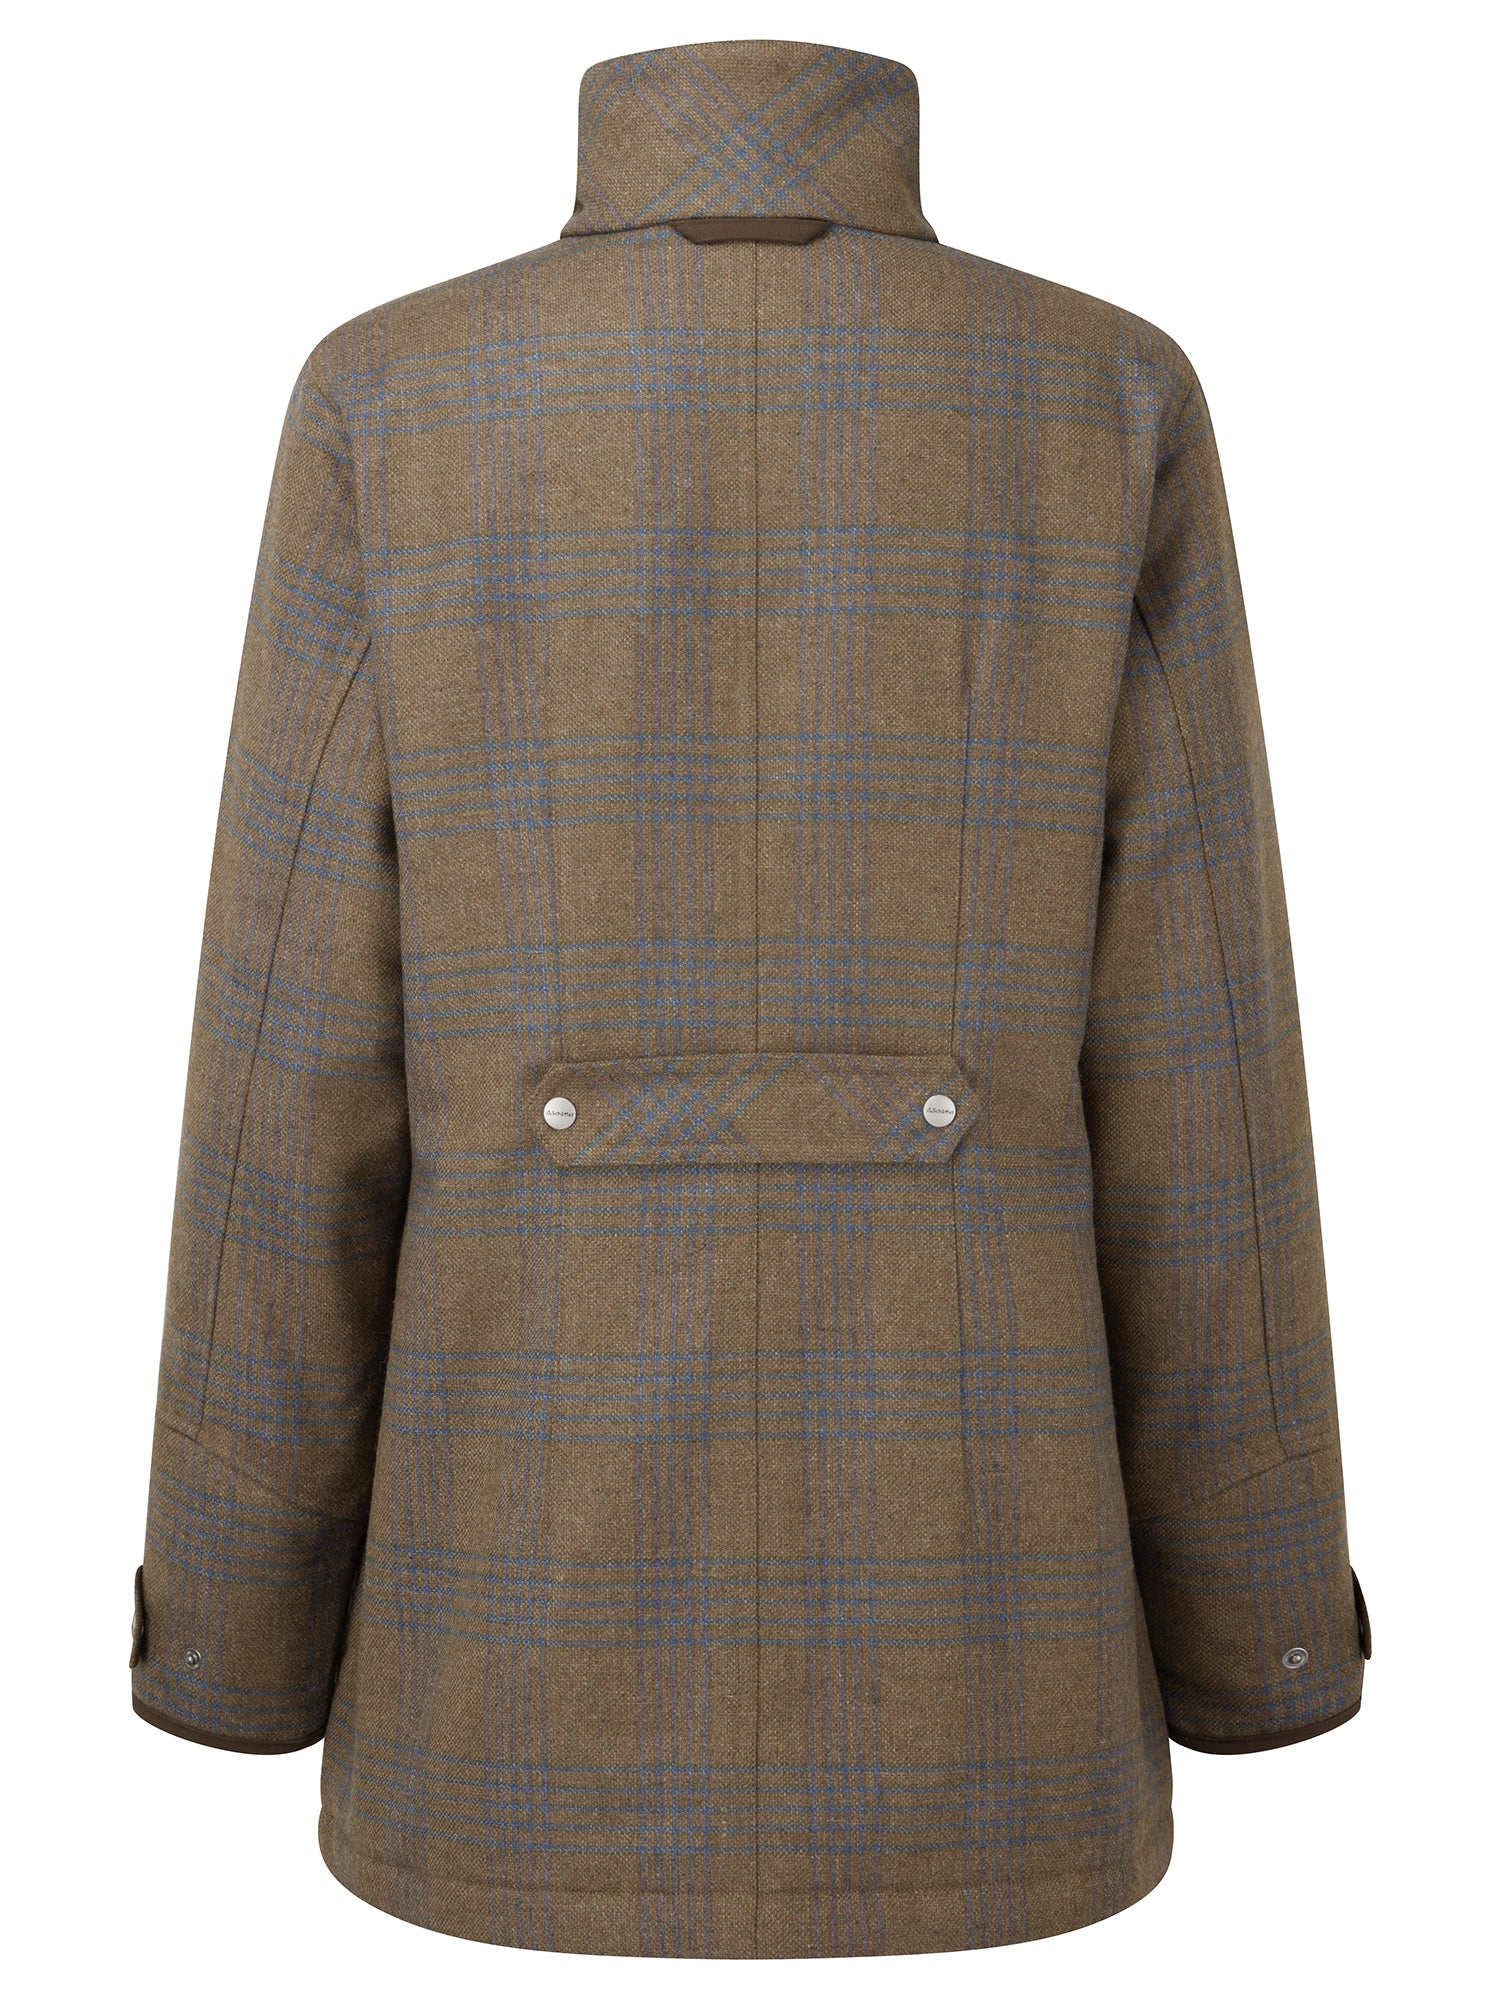 Ptarmigan Tweed Coat - Iona Tweed